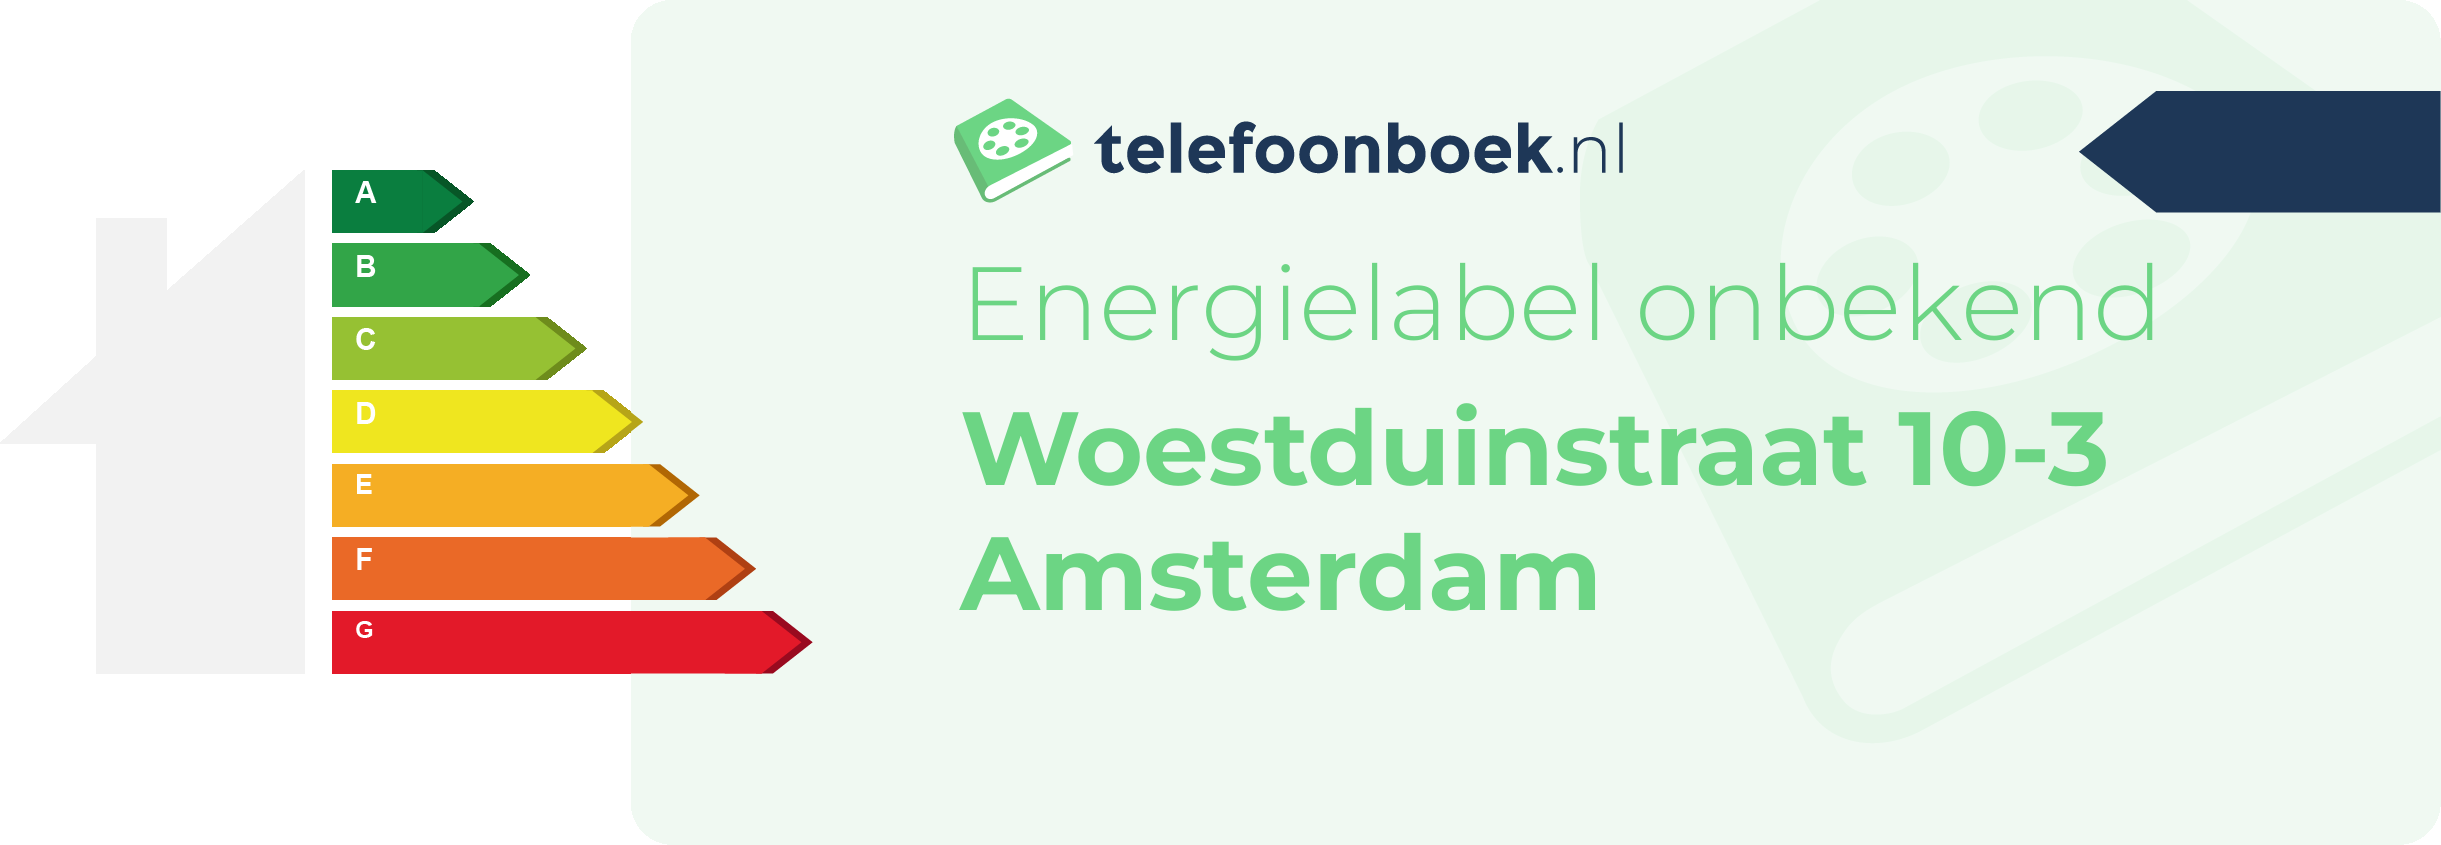 Energielabel Woestduinstraat 10-3 Amsterdam